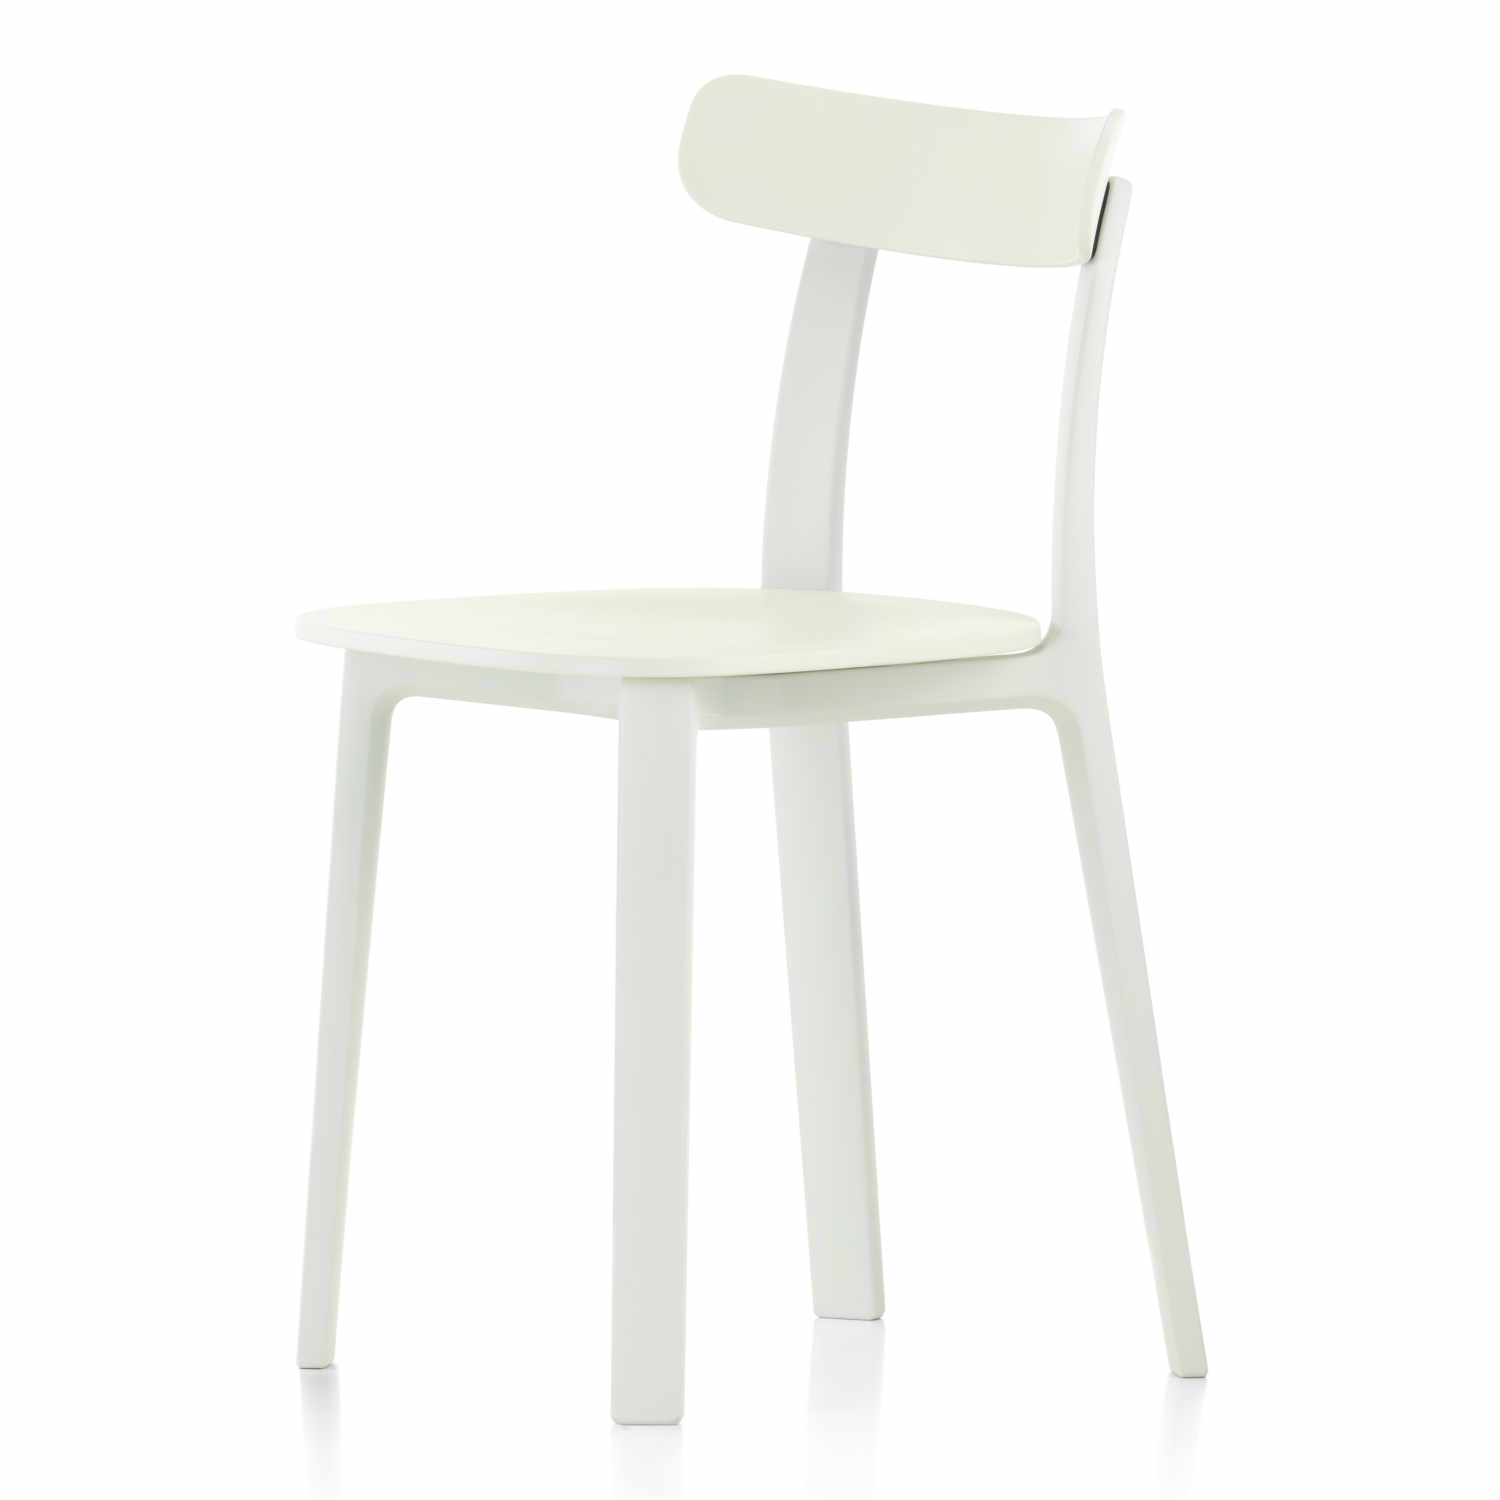 All Plastic Chair, Farbe weiss - two tone, Gleiter filzgleiter für harte böden von Vitra